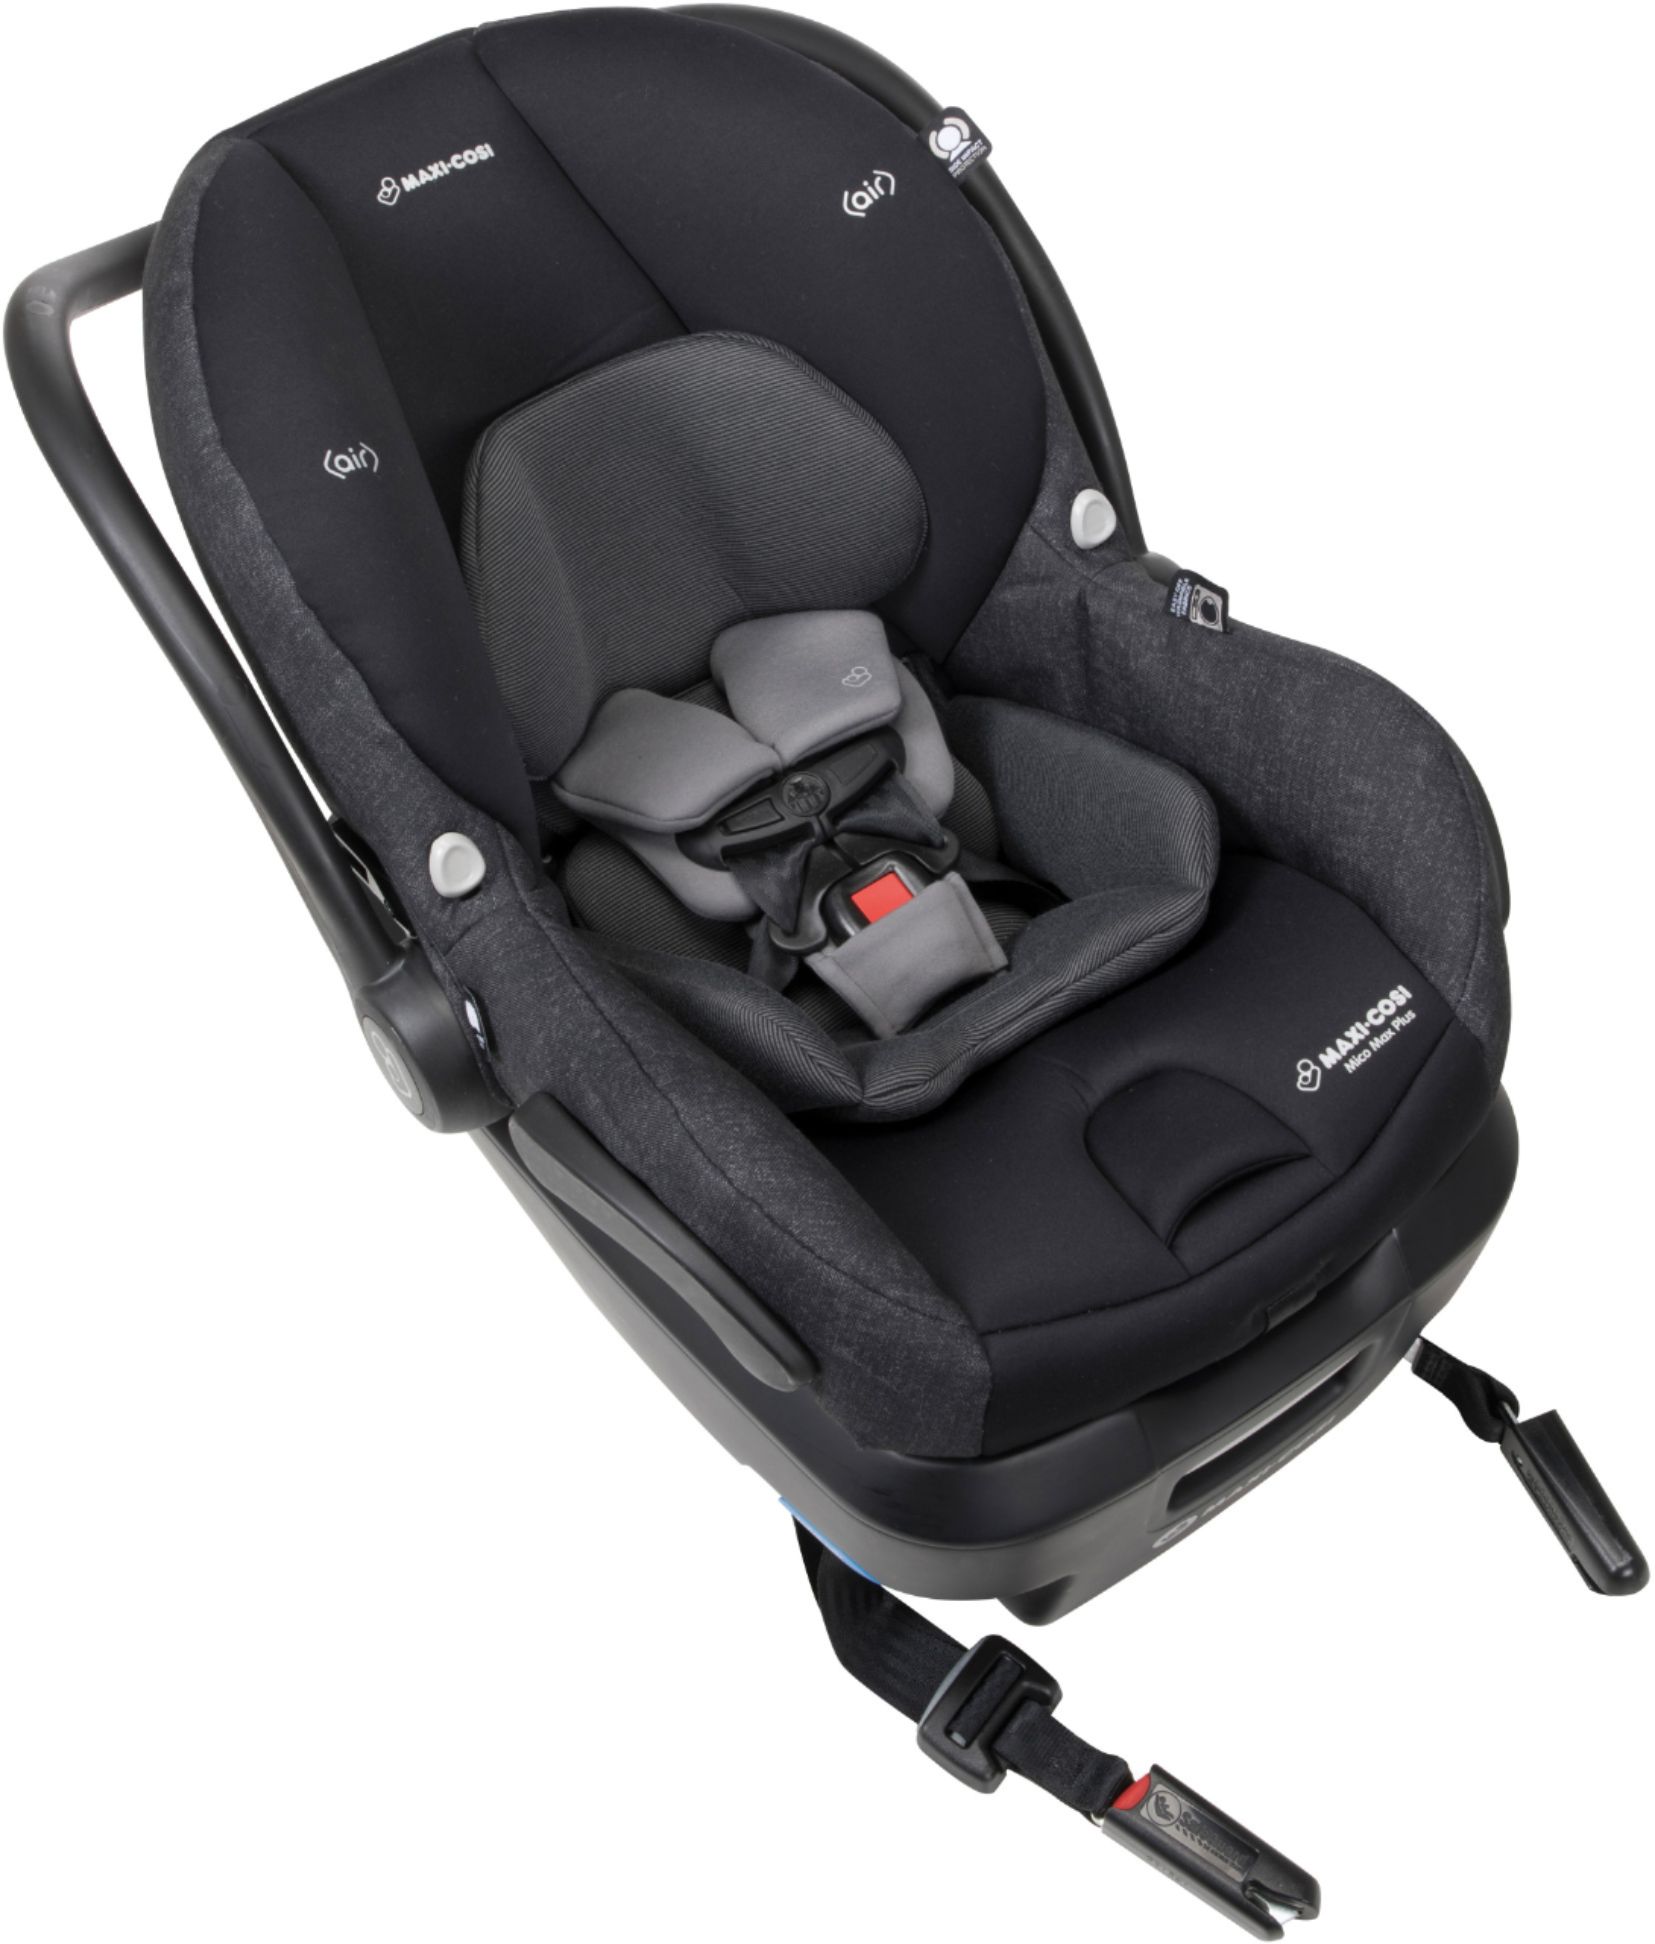 Best Buy: Maxi-Cosi Mico Max Plus Infant Car Seat Black IC306ETK